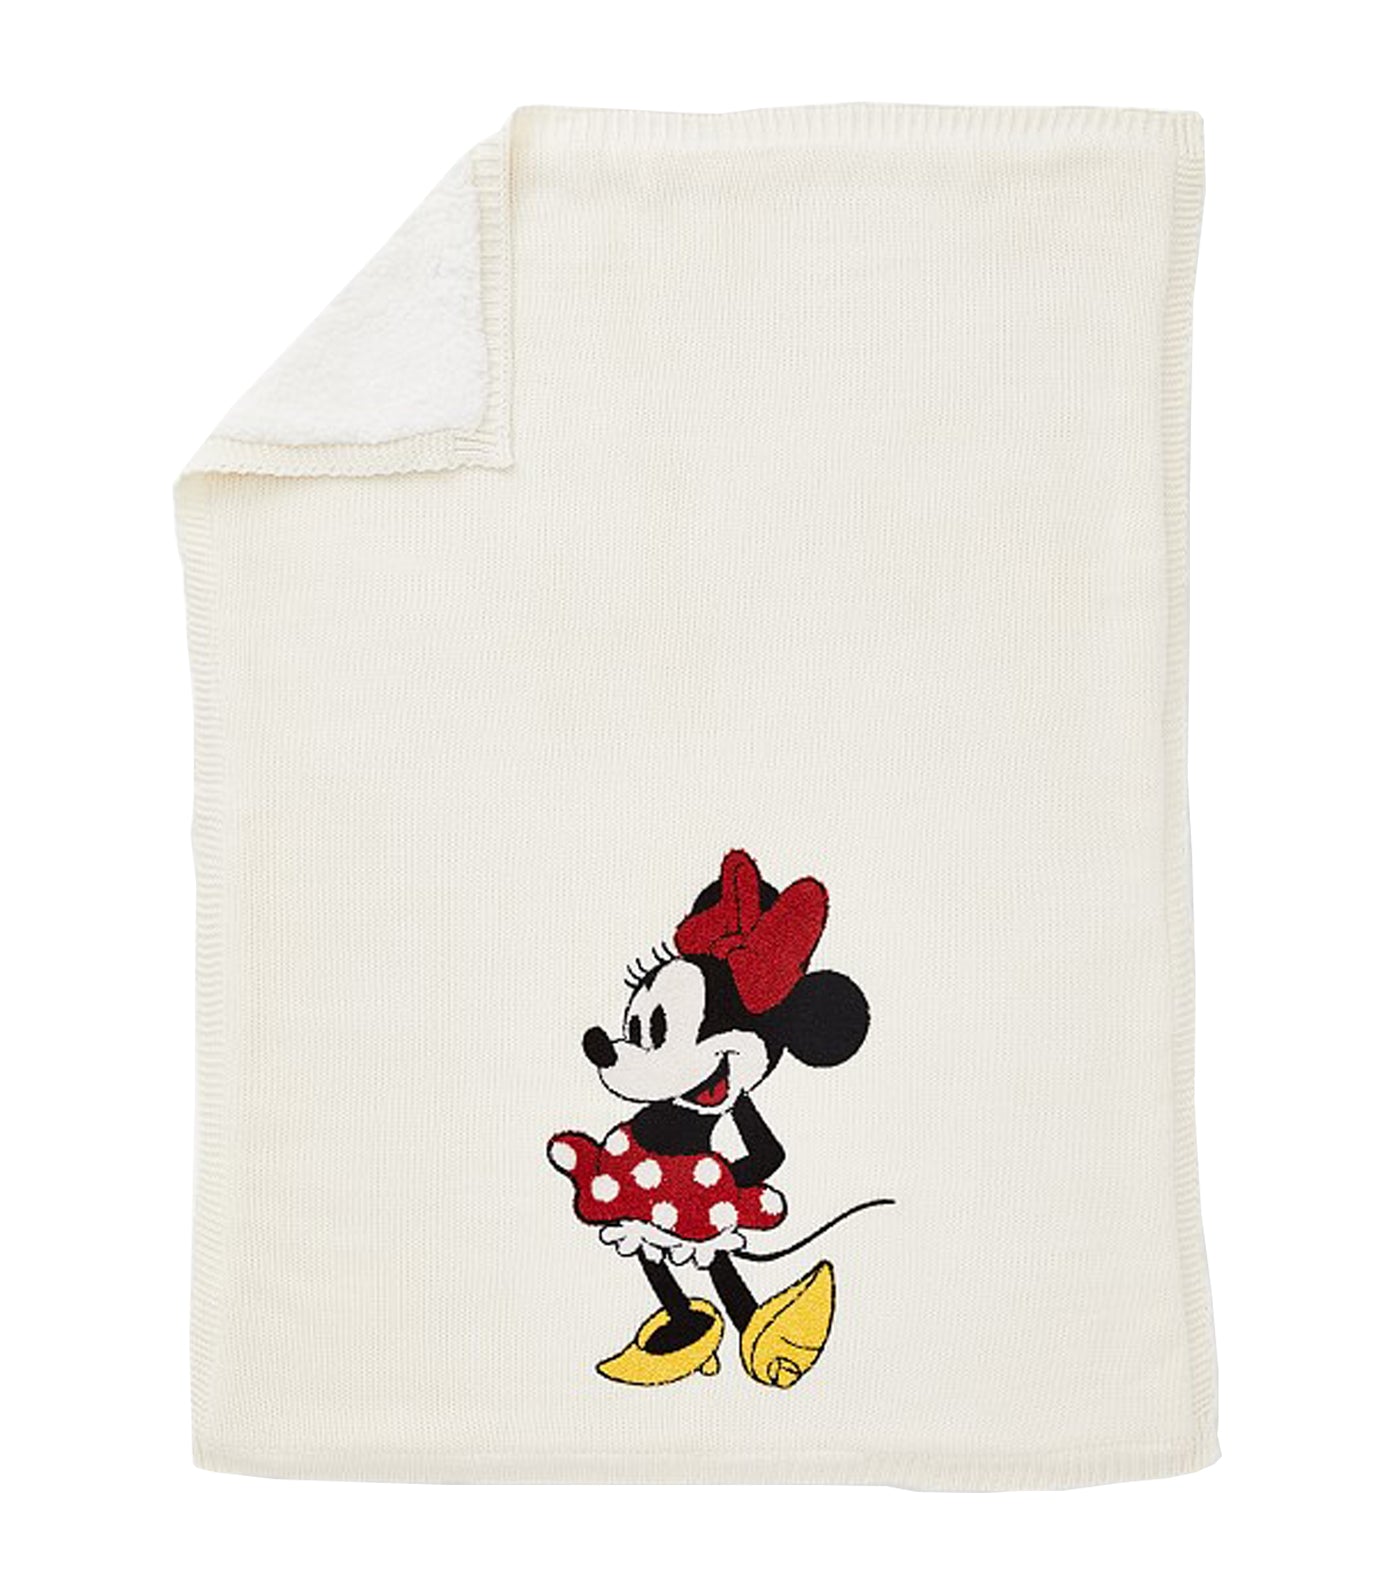 Disney Minnie Mouse Heirloom Baby Blanket - Multi